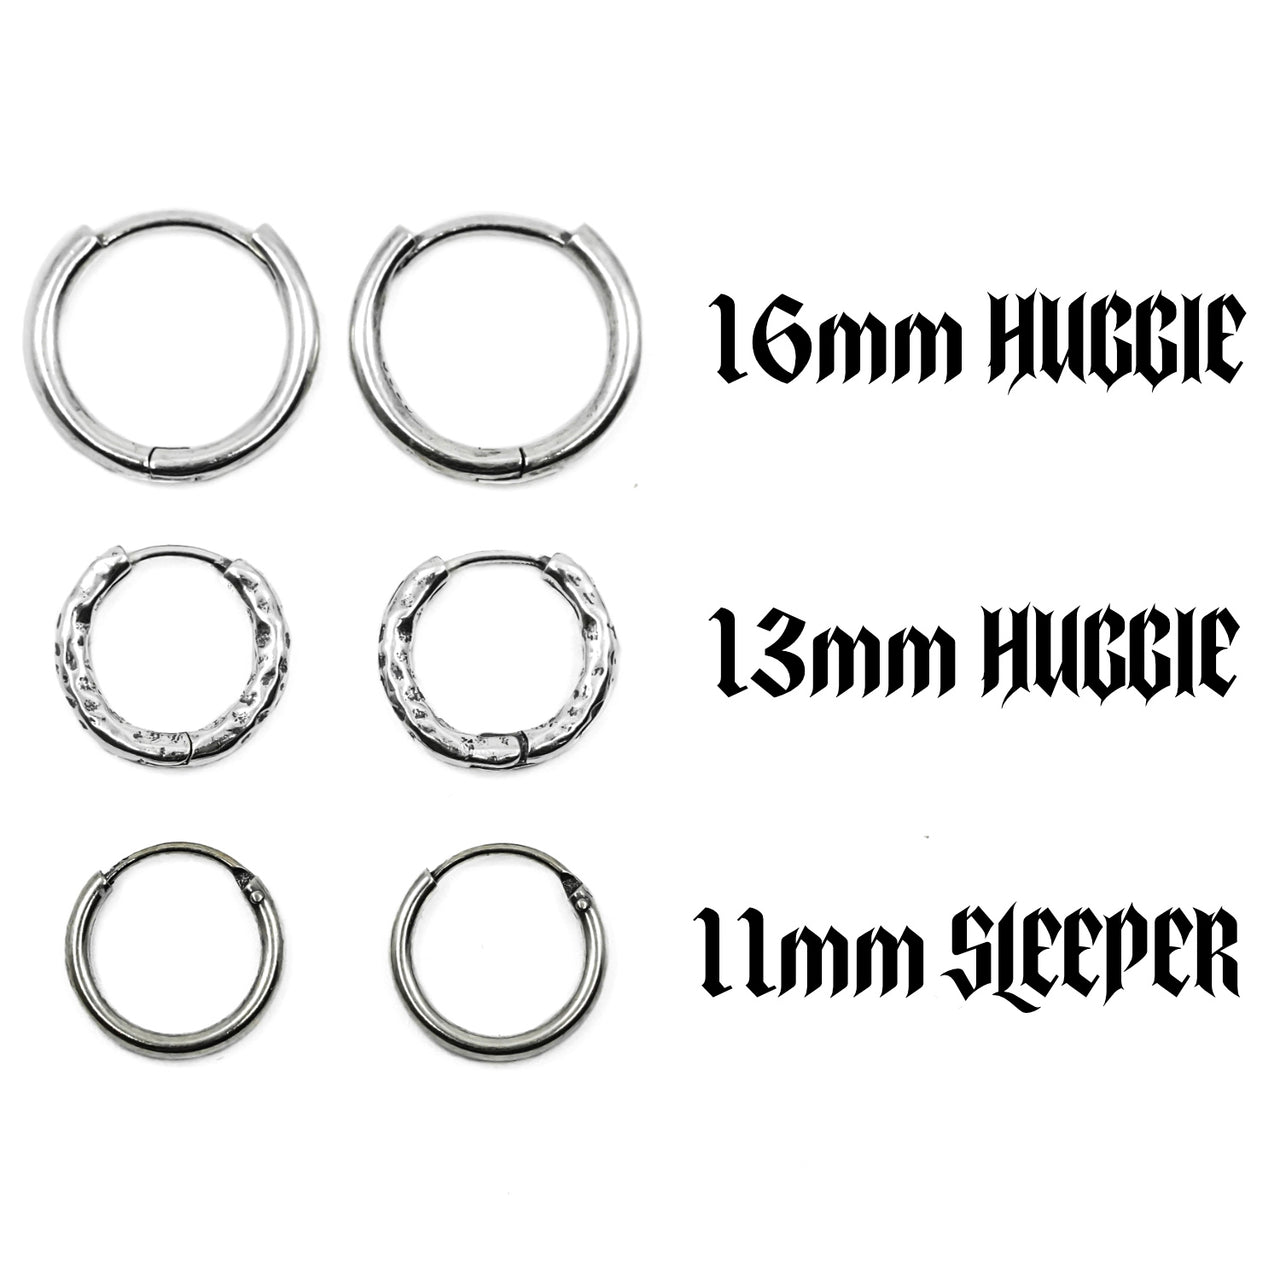 Sterling Silver Earring Hoops - Huggie Hoop and Sleeper Hoop Options